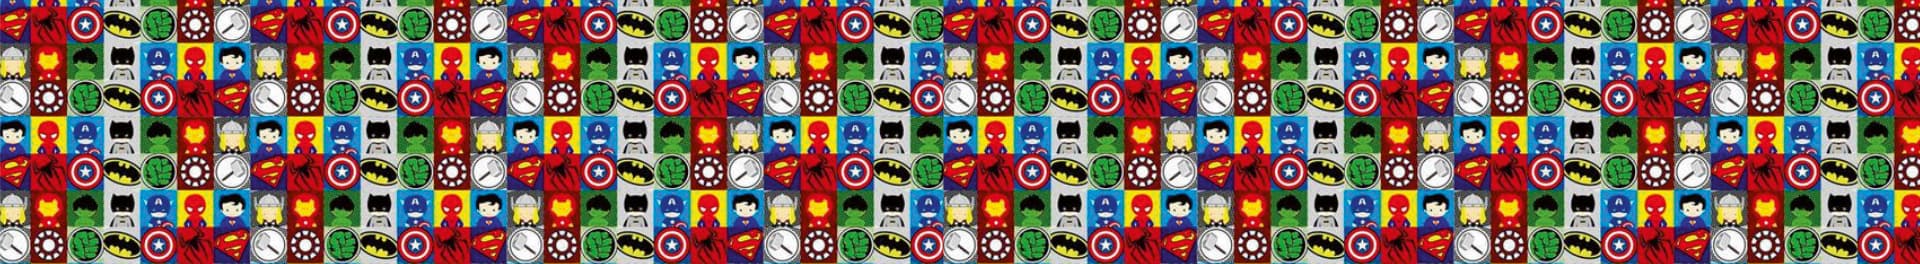 canecas de super herois